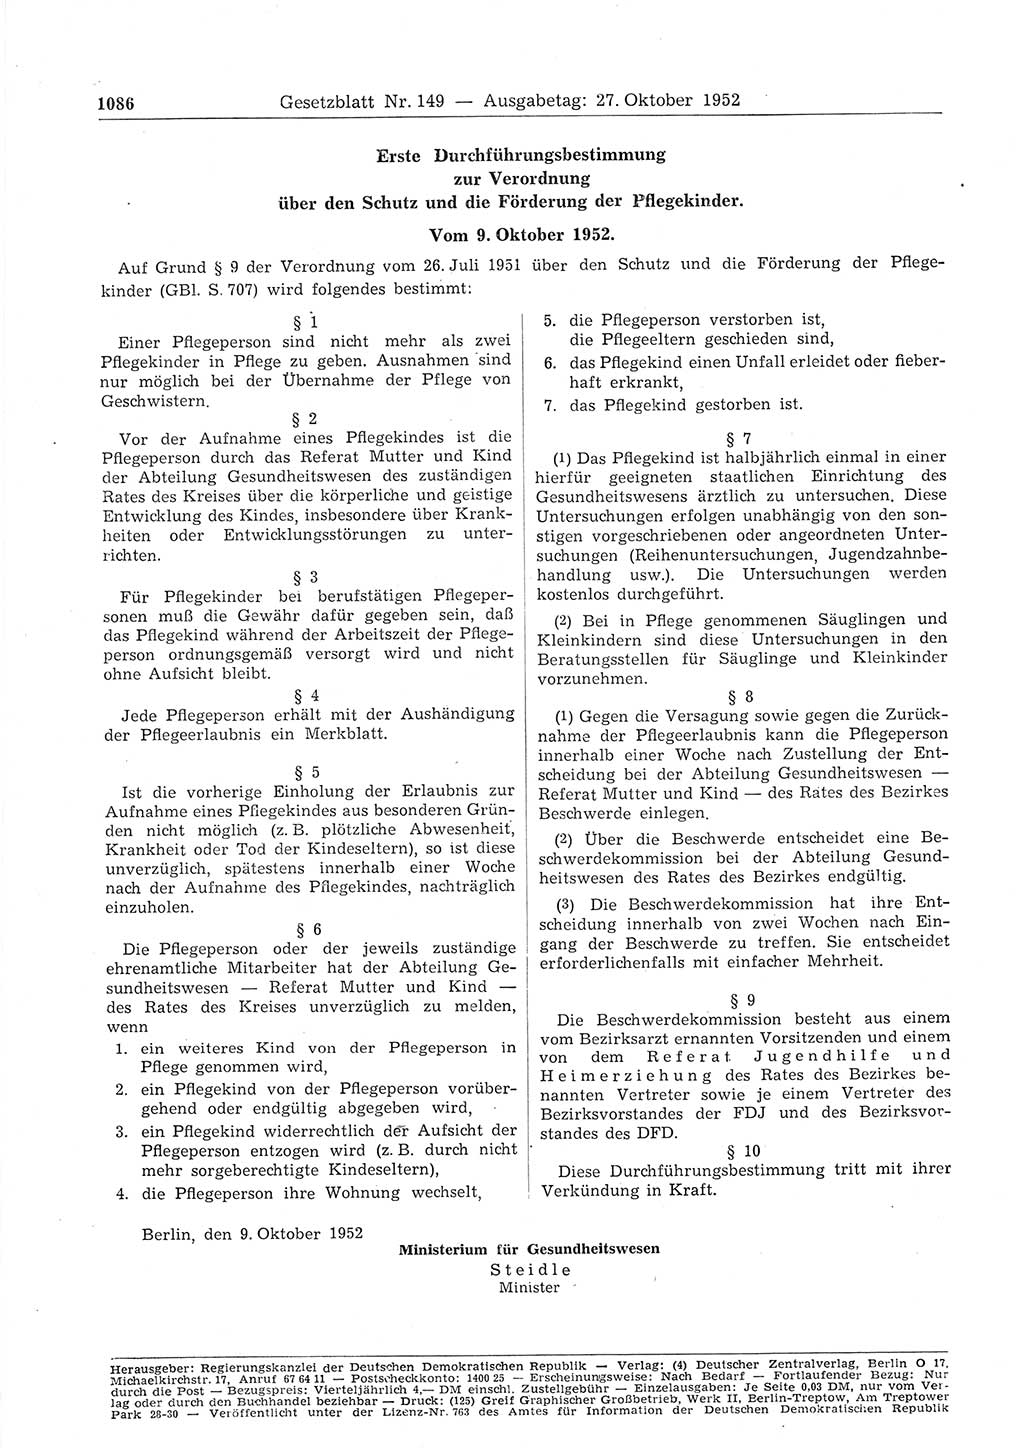 Gesetzblatt (GBl.) der Deutschen Demokratischen Republik (DDR) 1952, Seite 1086 (GBl. DDR 1952, S. 1086)